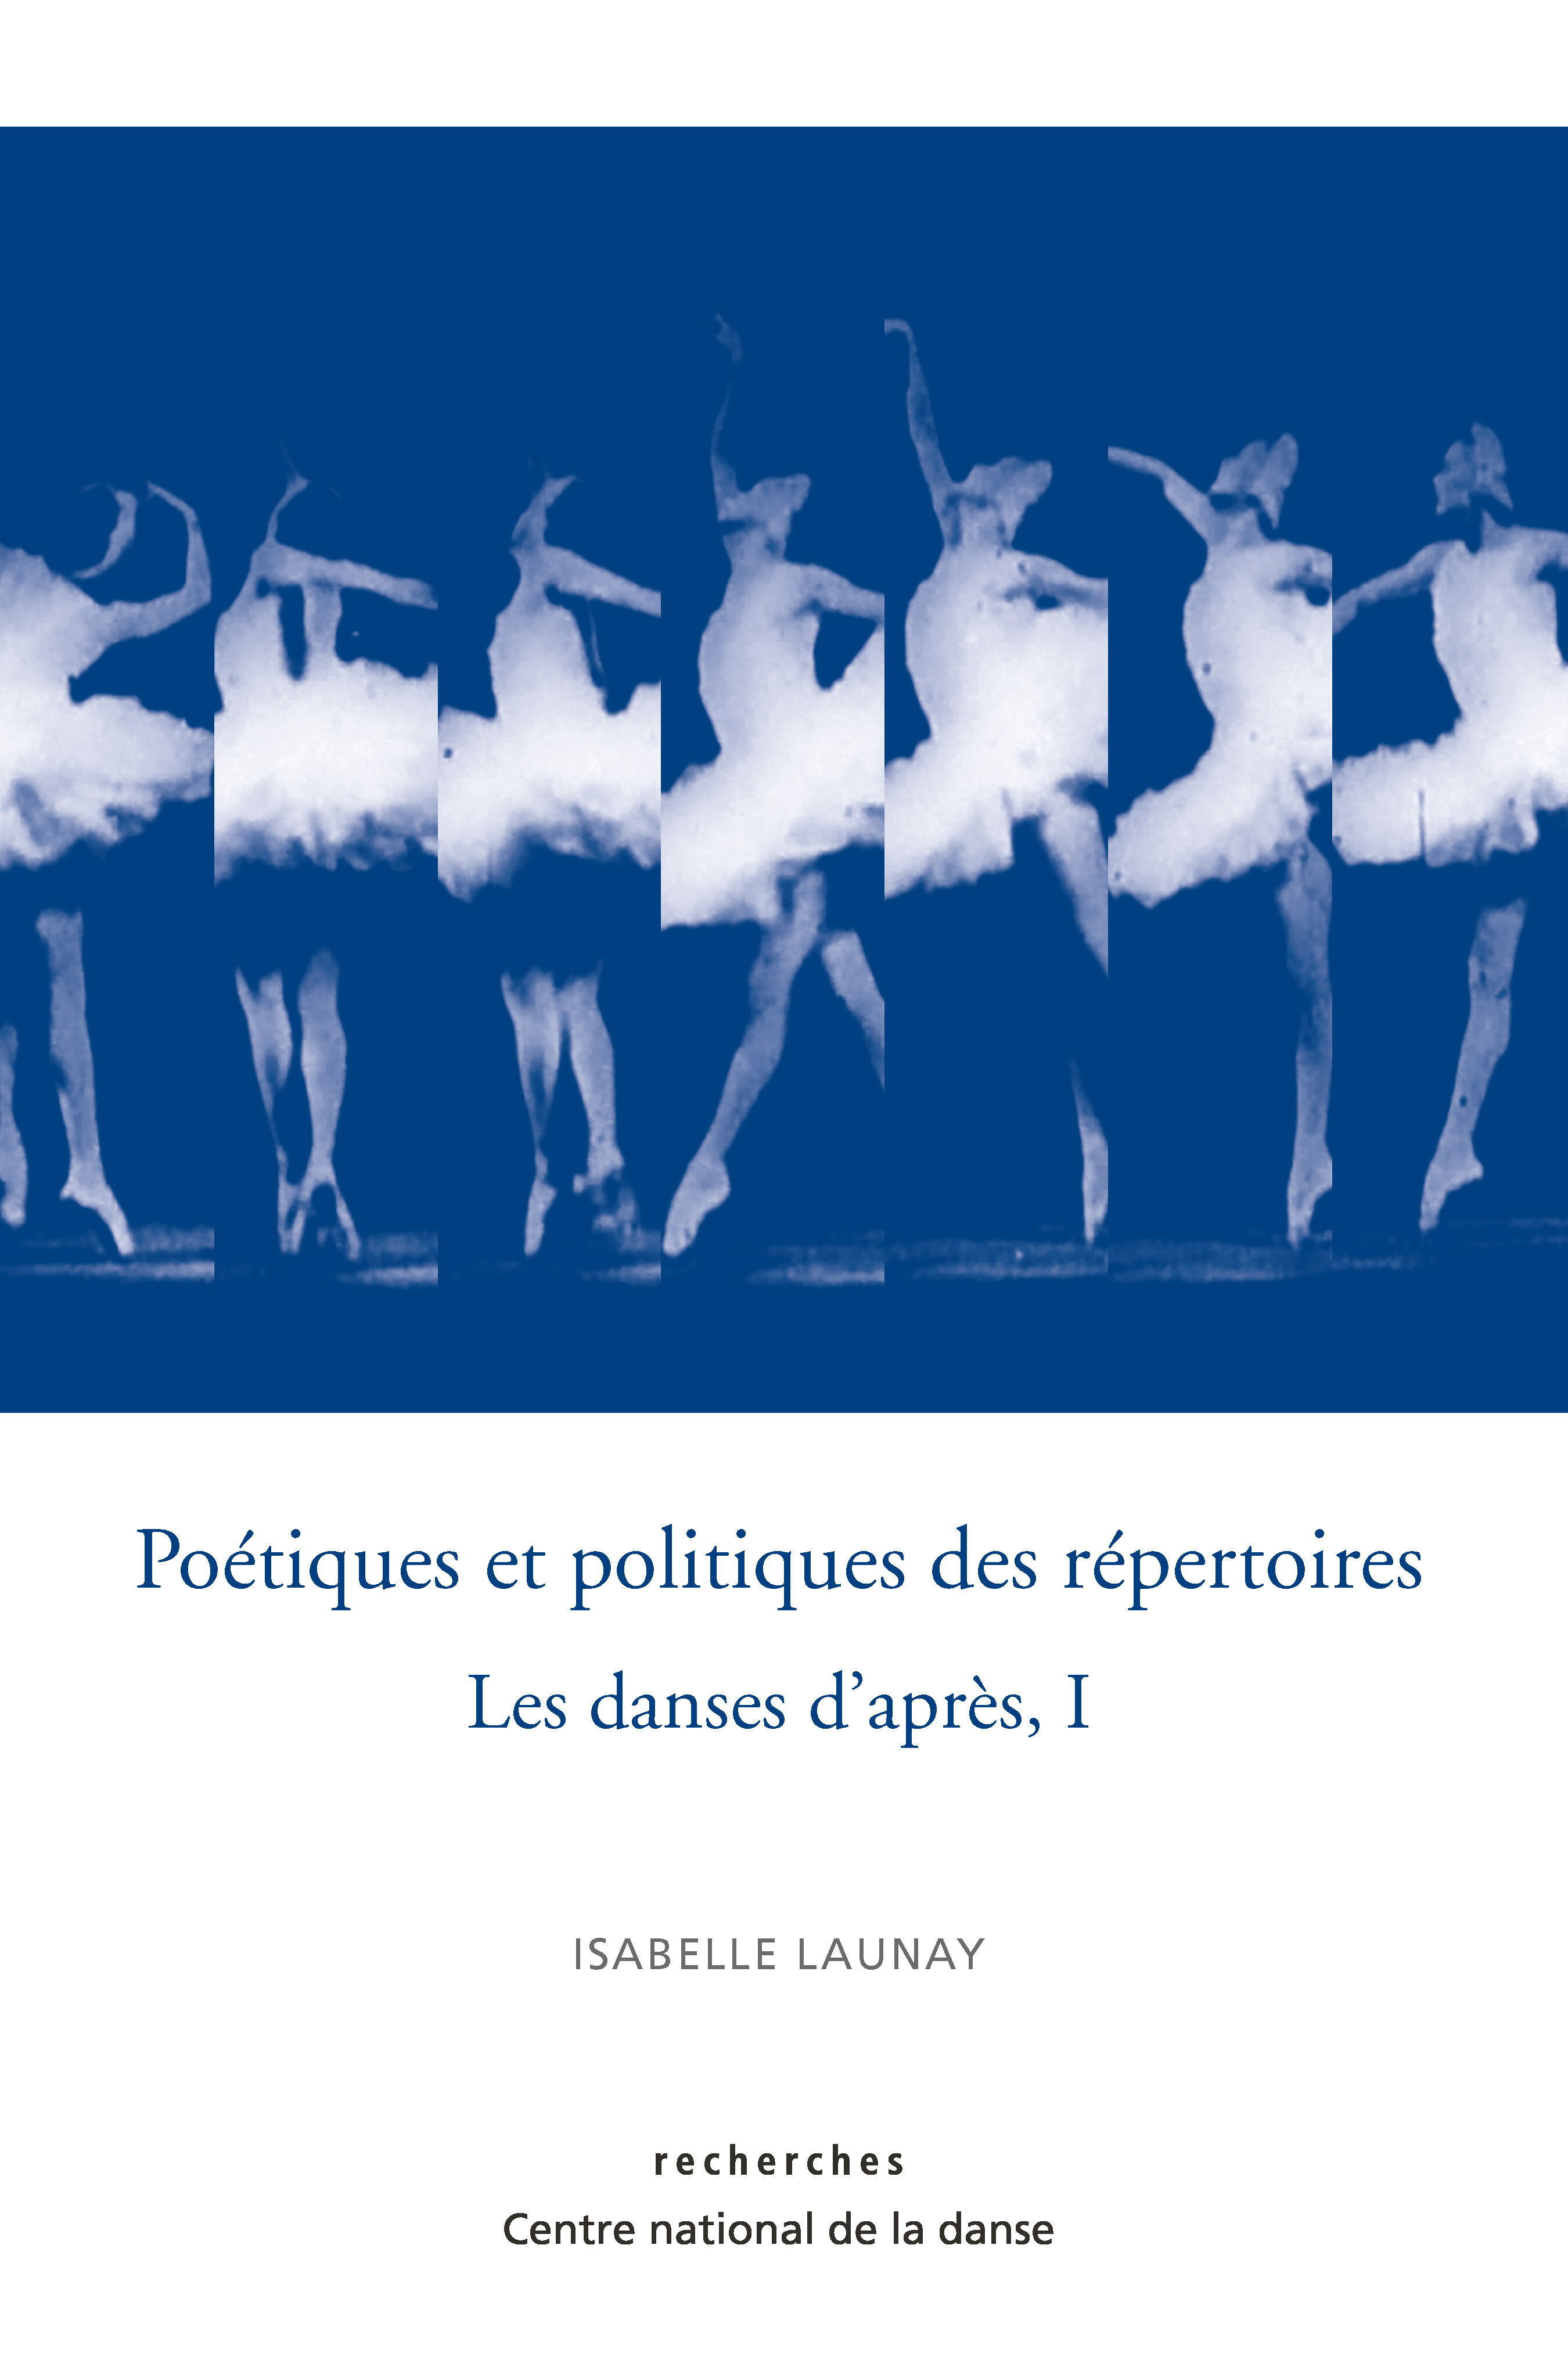 Couverture de Poétiques et politiques des répertoires, les danses d'après, I d'Isabelle Launay.